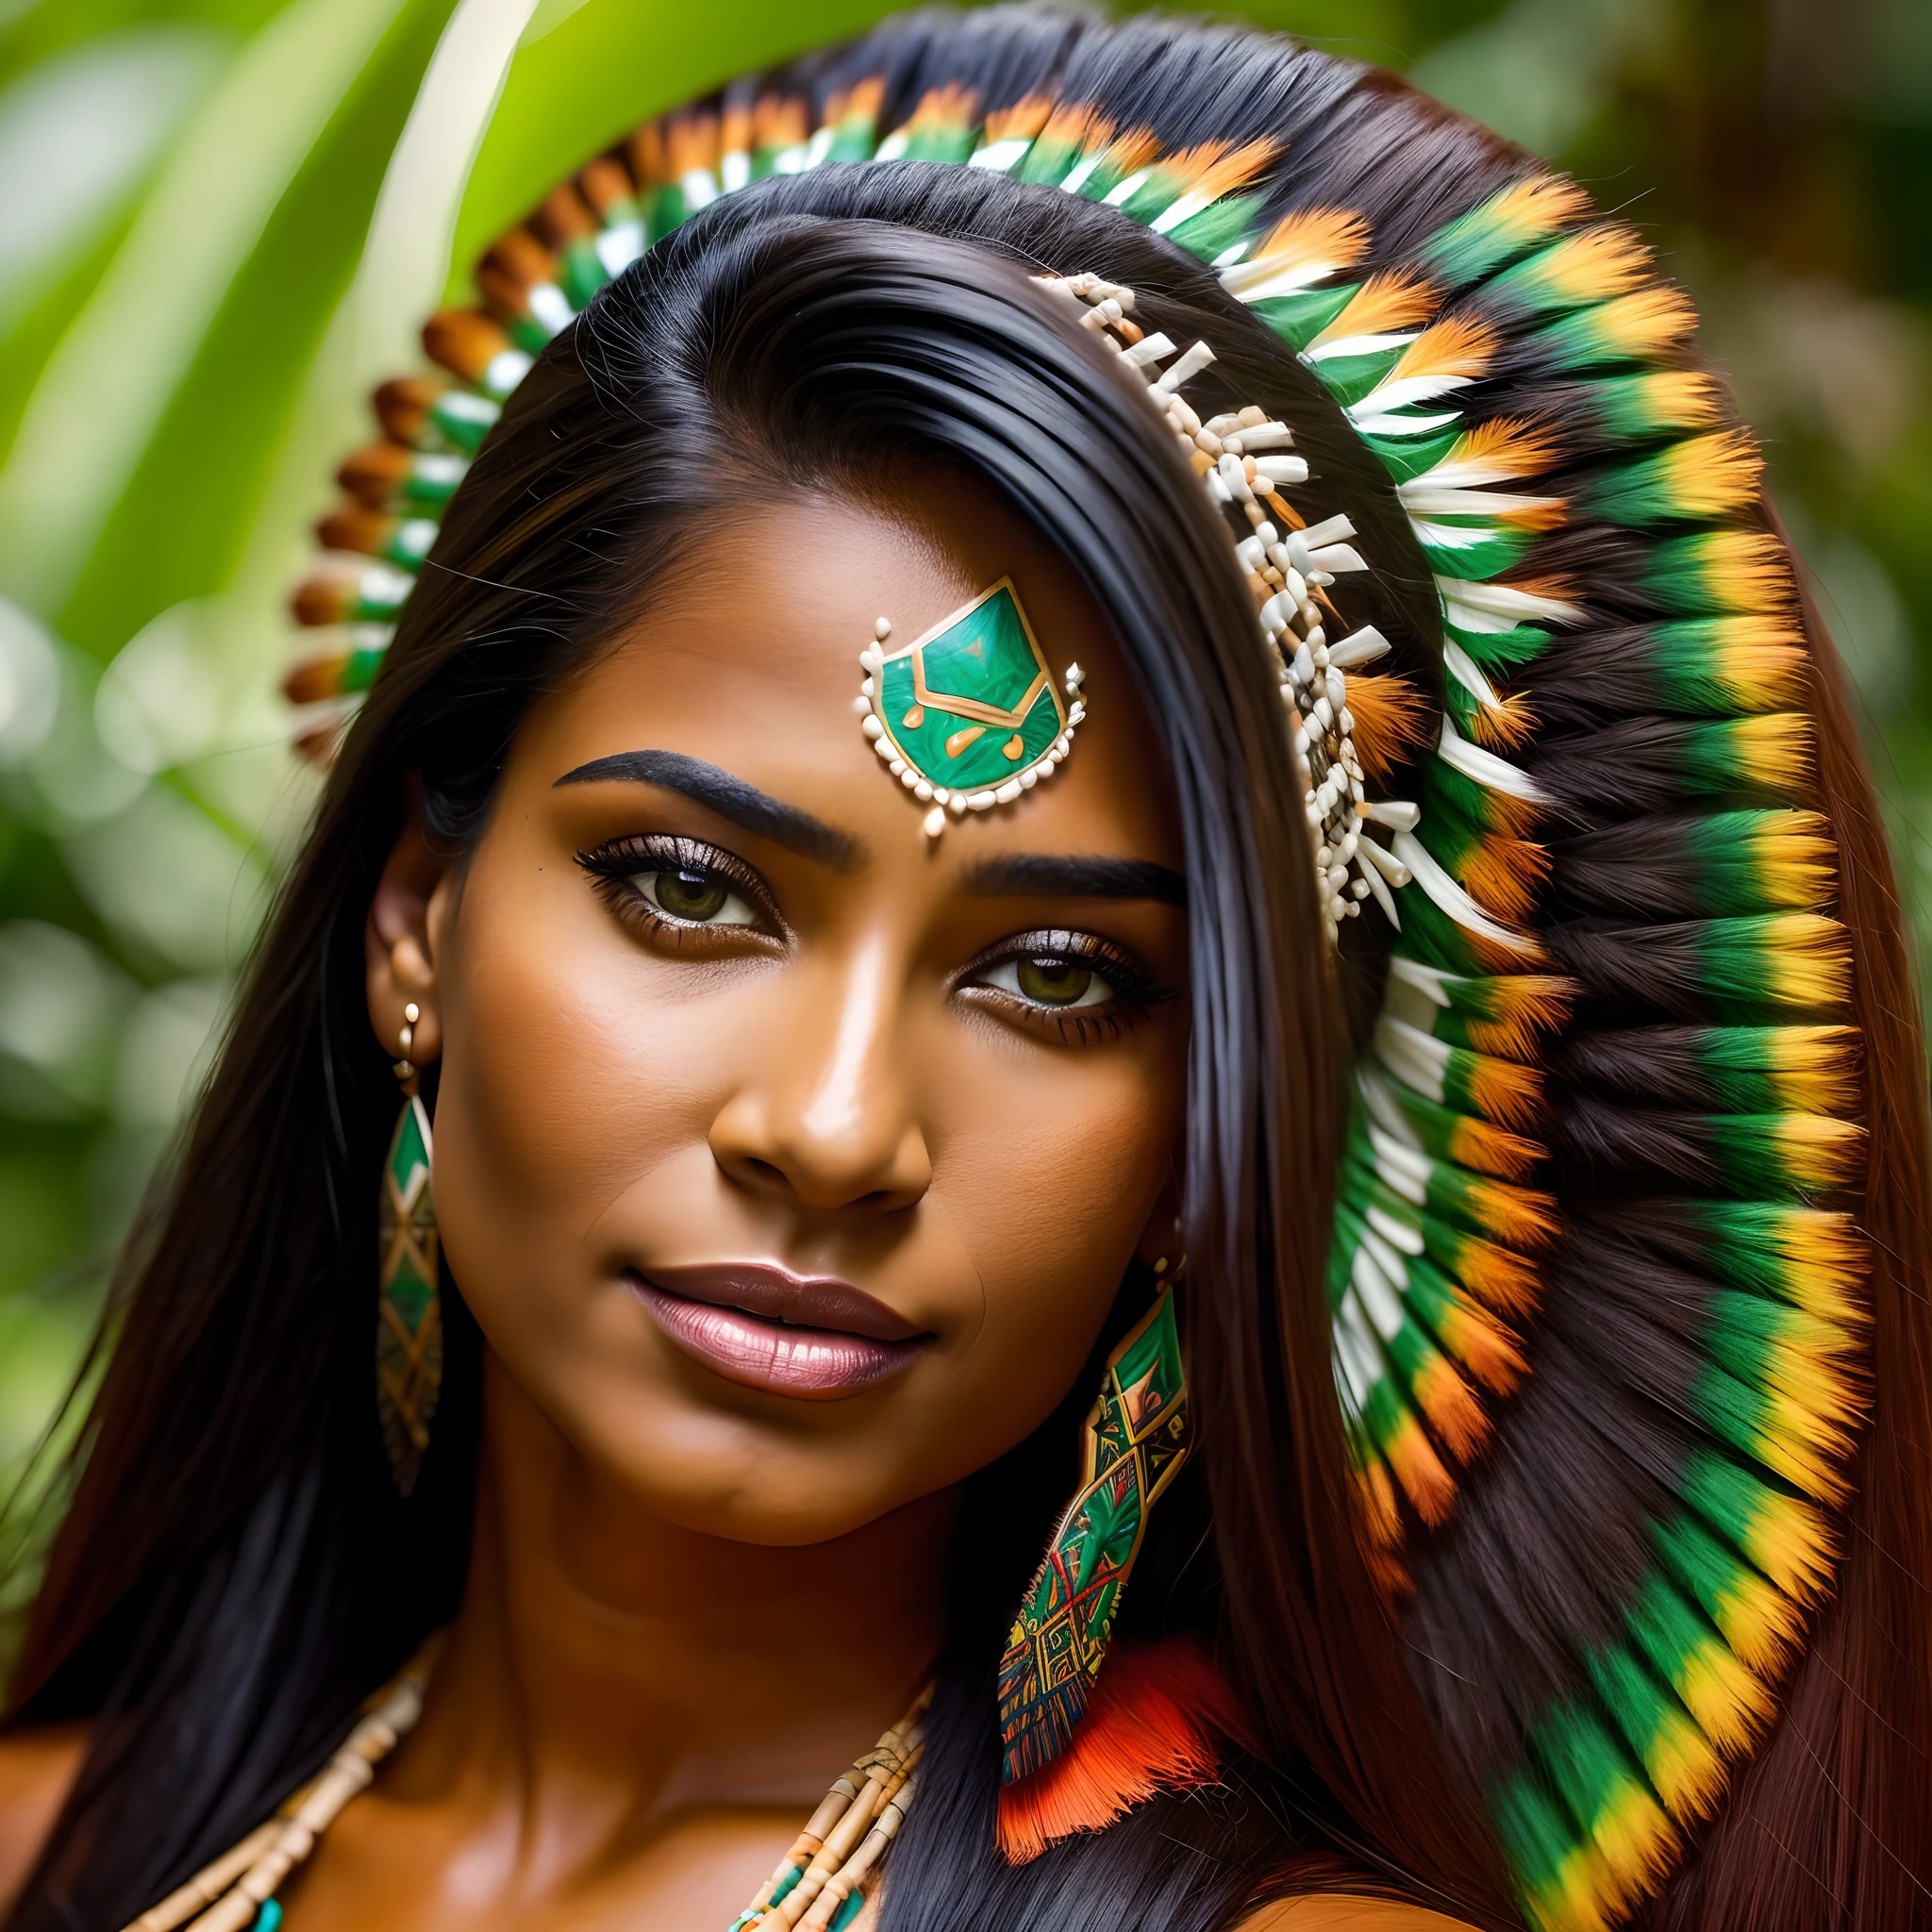 美麗的巴西原住民婦女看起來 29 歲, 深色皮膚,黑色長直髮,8k影像,或上級,olhos negros 超现实的s,rosto lindo 超现实的,尼康D700.(超現實背景的亞馬遜雨林,配戴頭飾,中等乳房向外,原住民草裙,用典型的繪畫勾勒出臉部輪廓，突出他們的臉部,藝術品,超现实的)